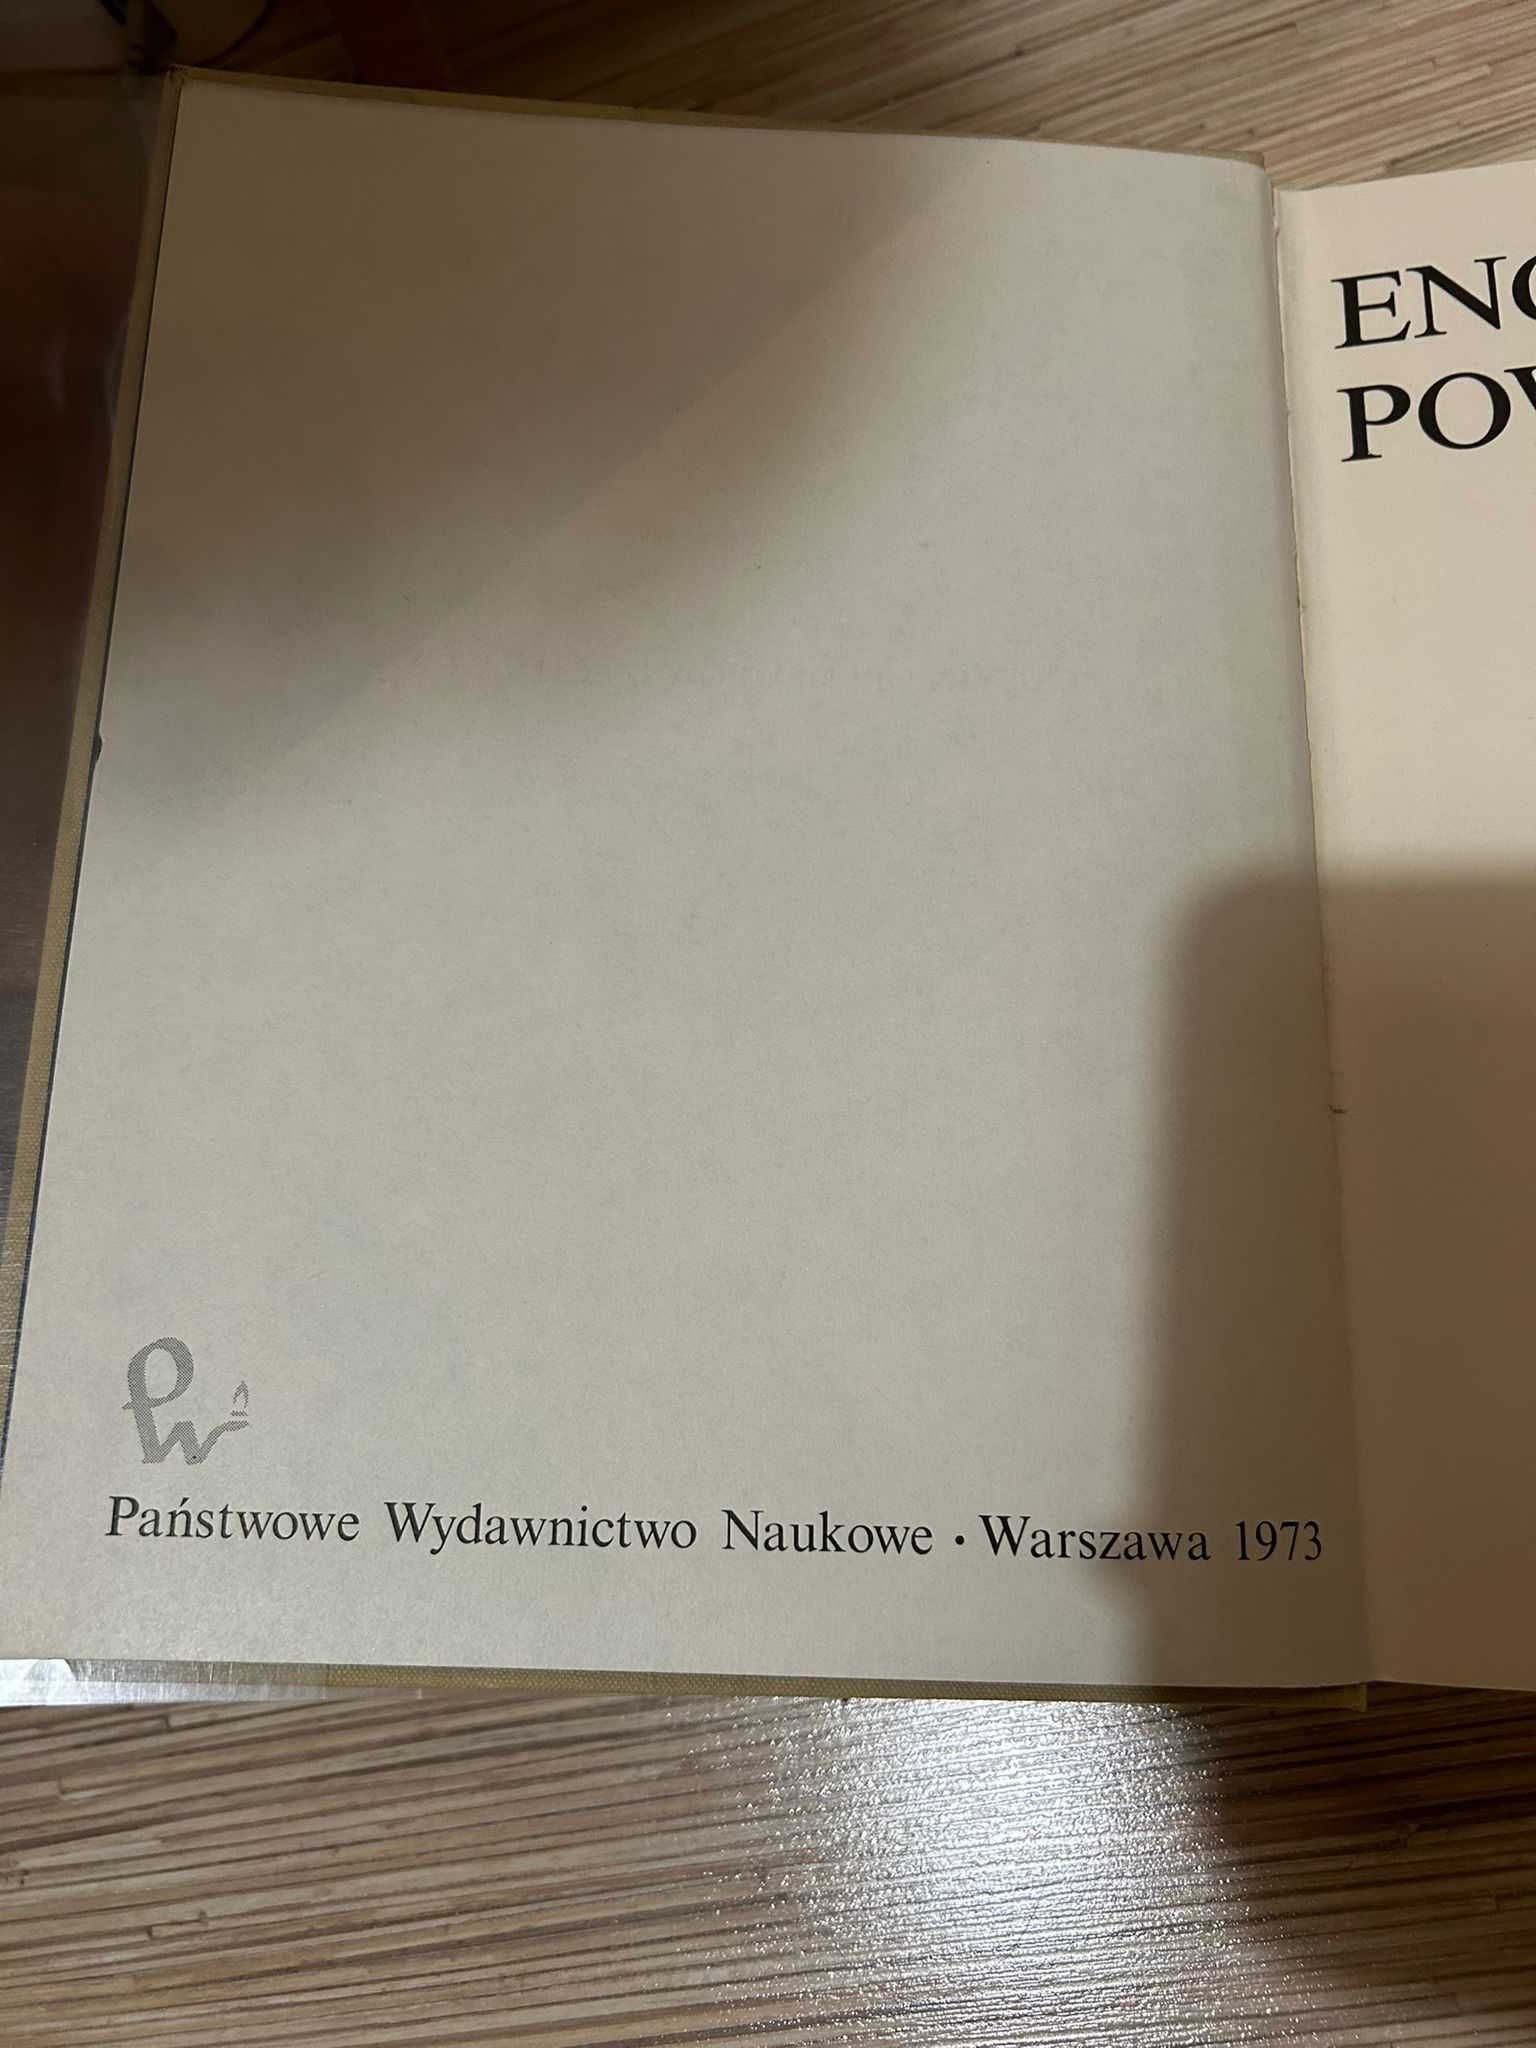 Encyklopedia powszechna PWN 4 tomy